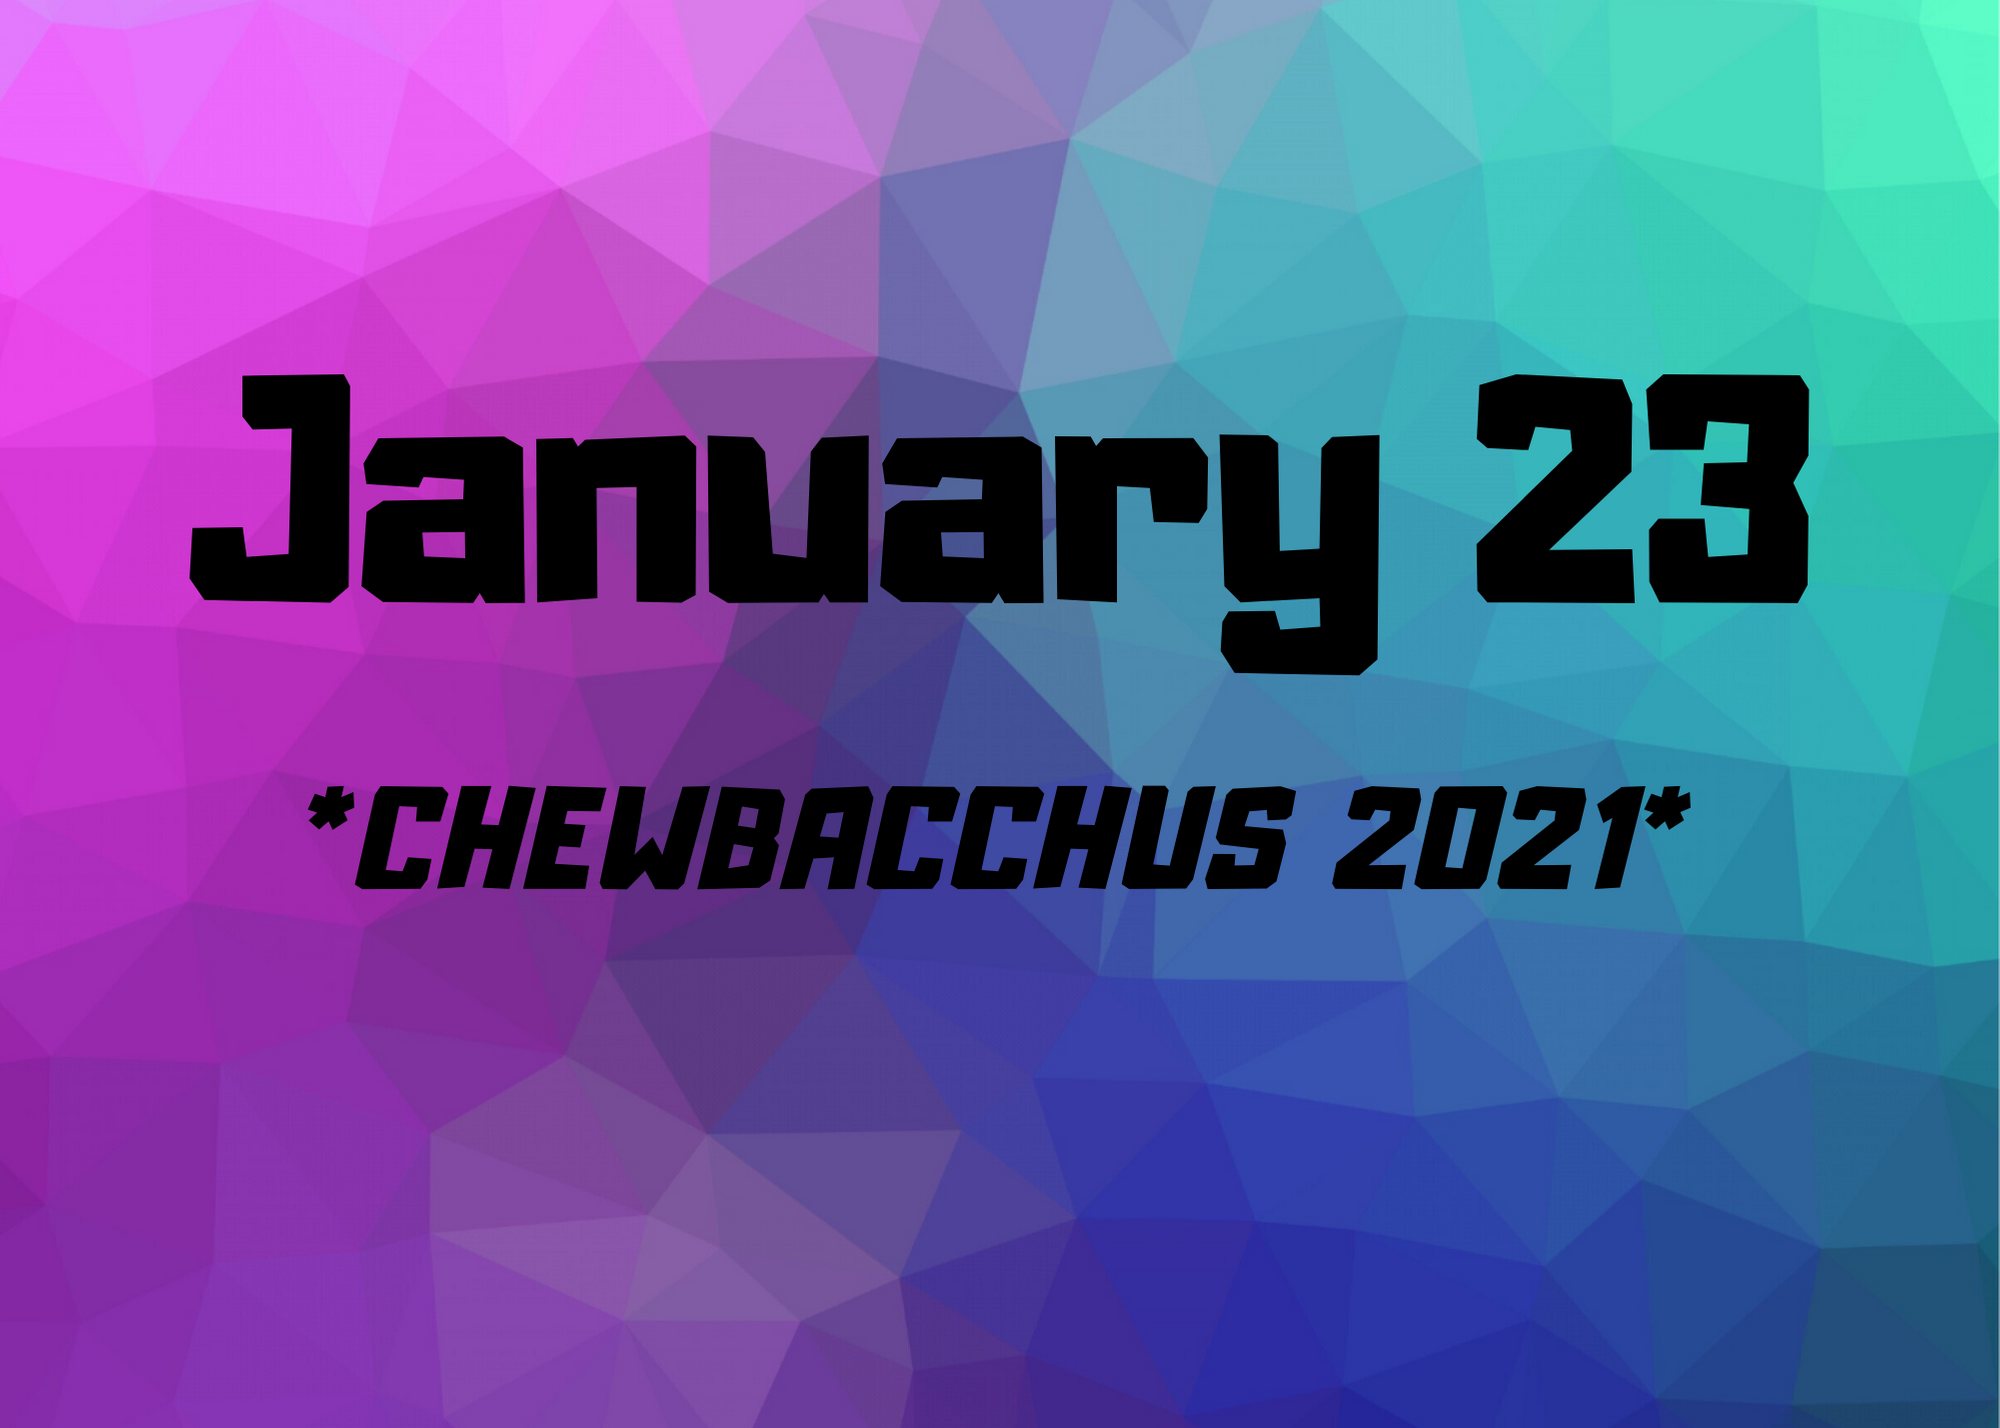 Chewbacchus 2021: January 23